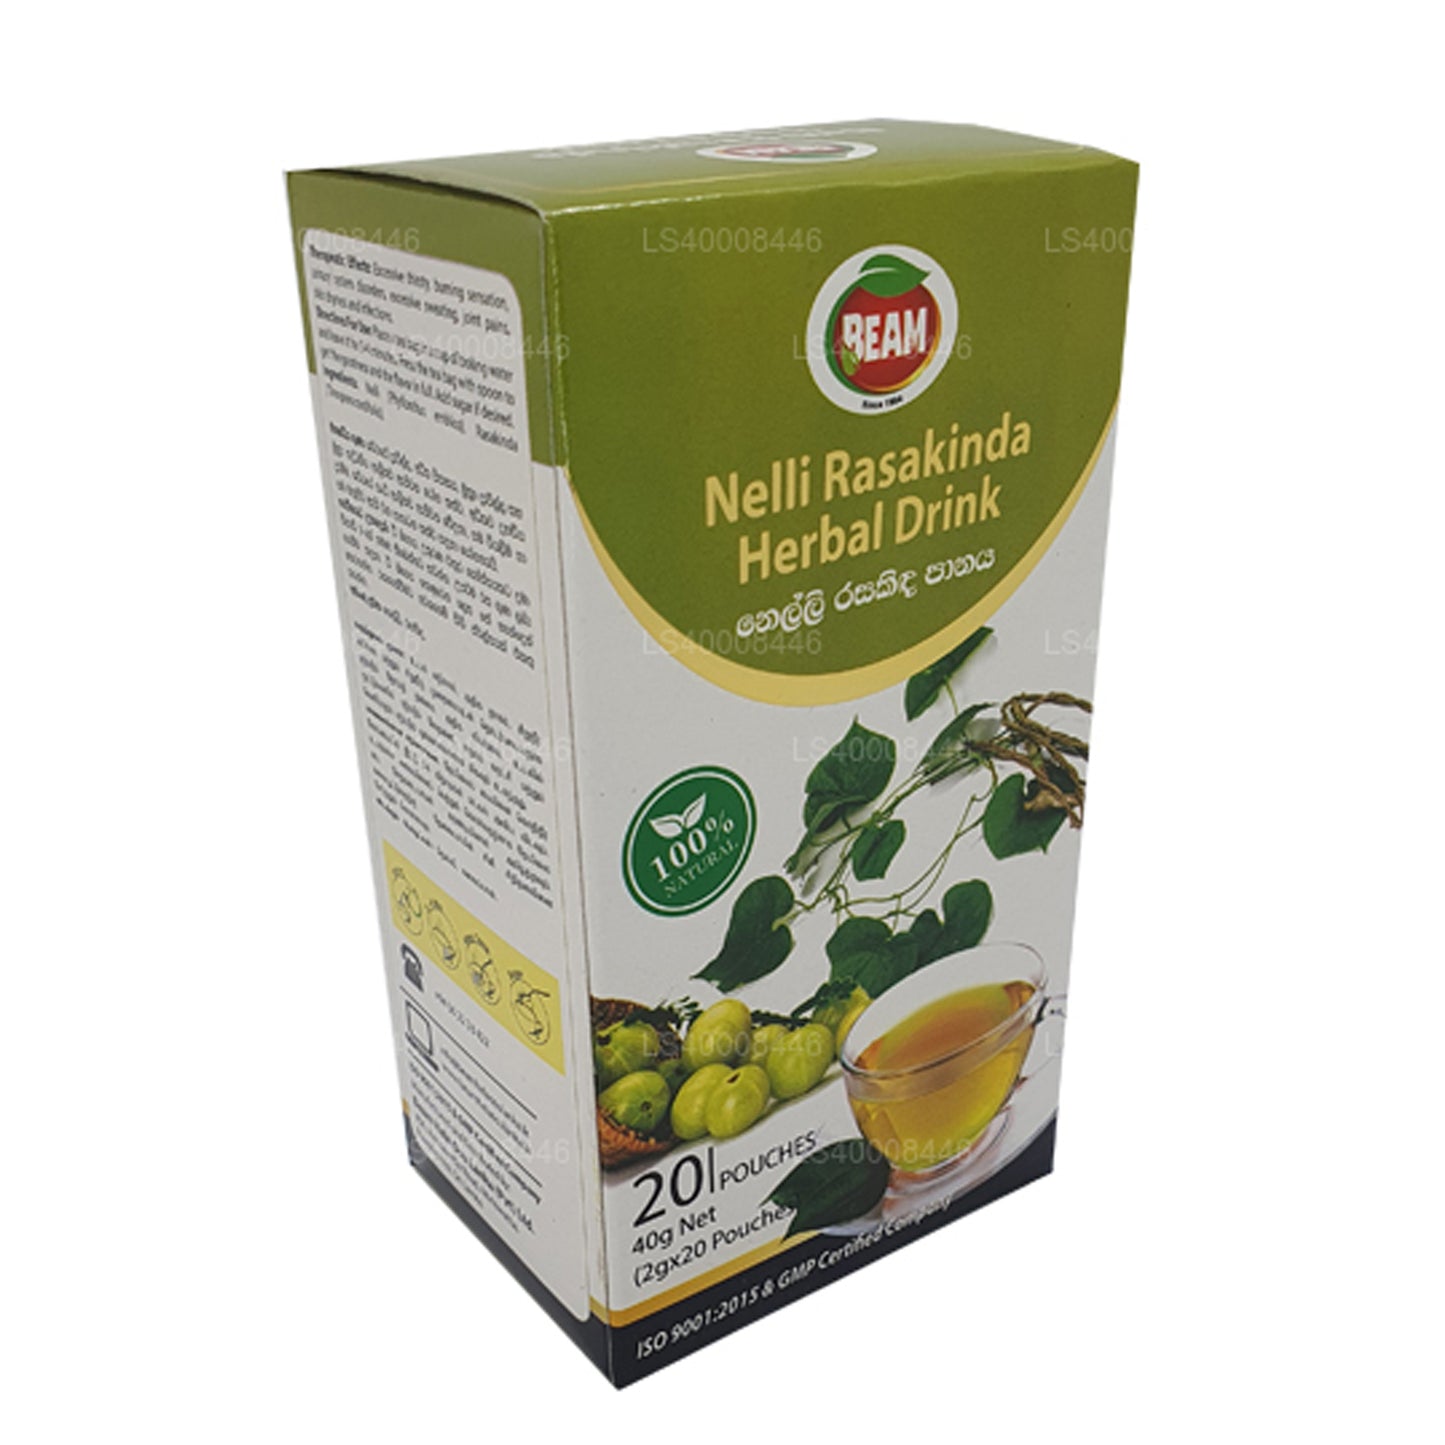 Bevanda a base di erbe Beam Nelli Rasakinda (40g) 20 bustine di tè